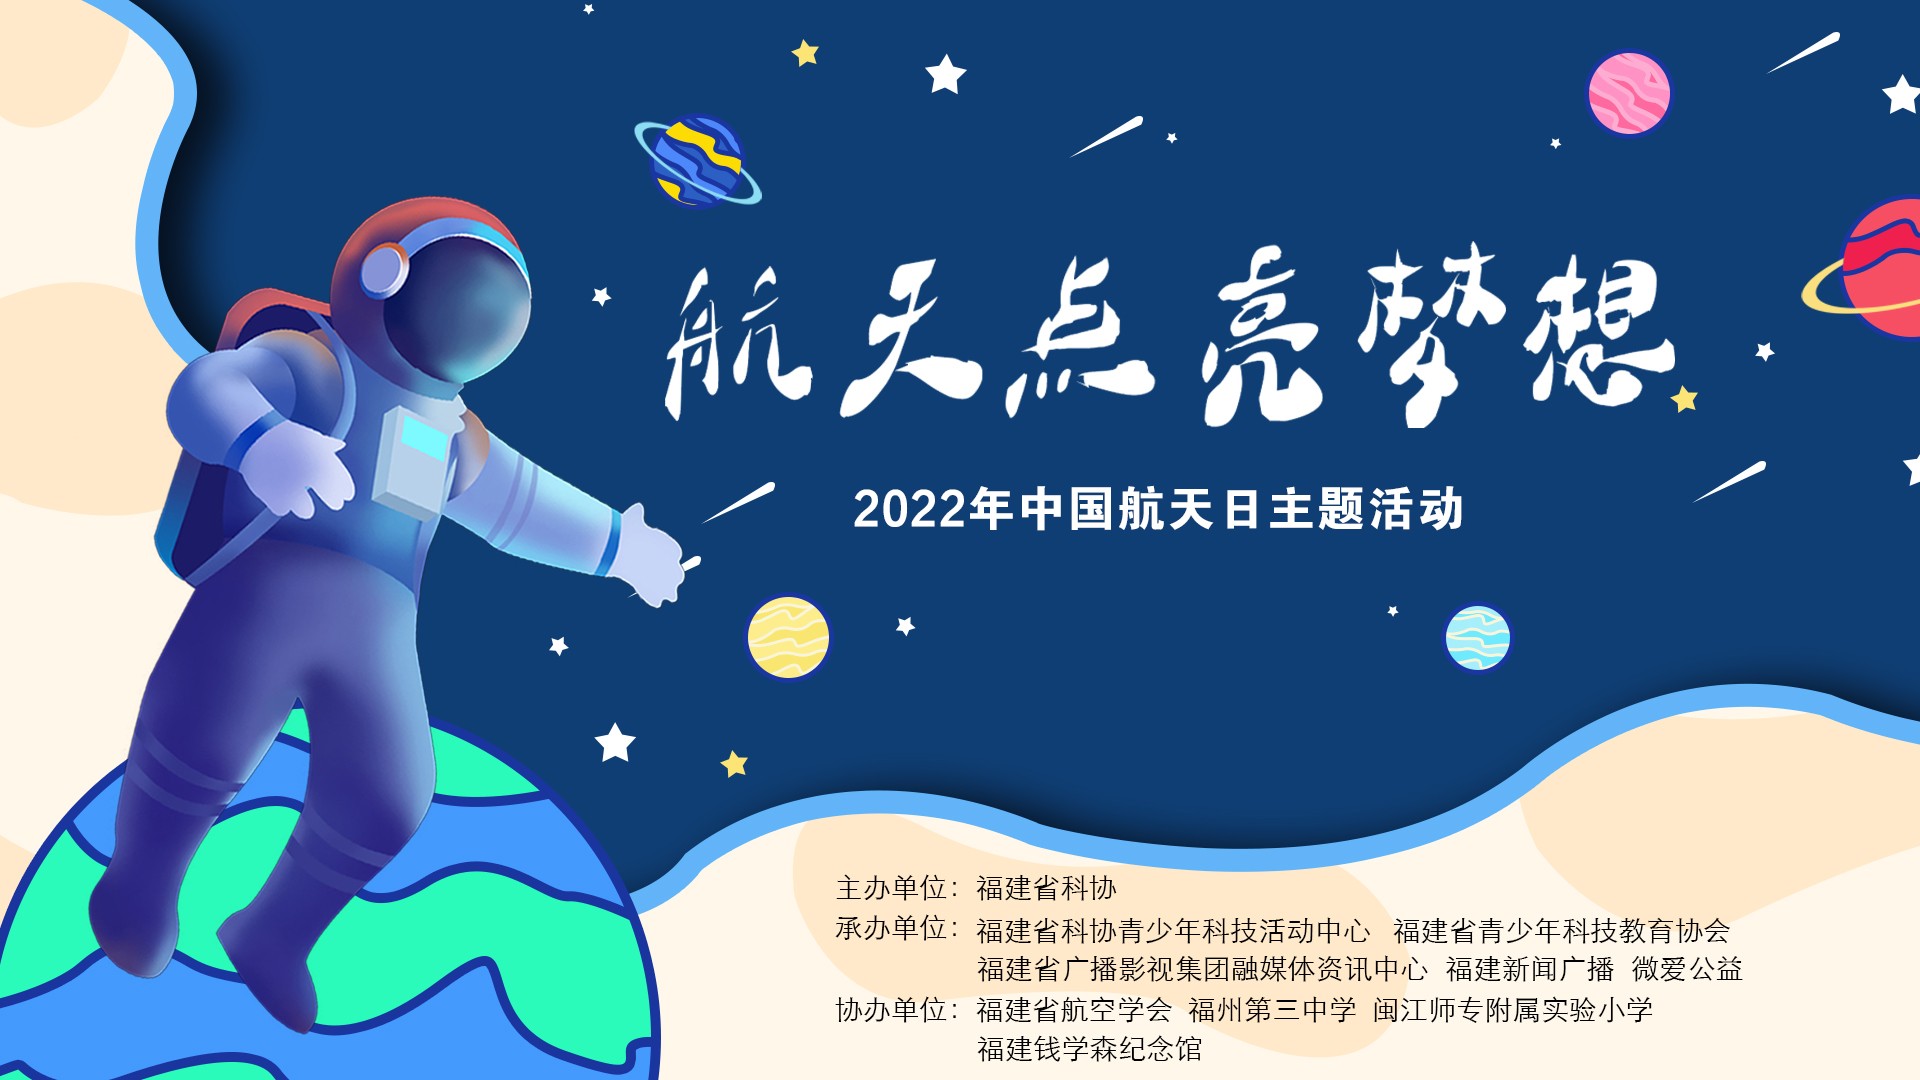 《航天点亮梦想》--2022年中国航天日